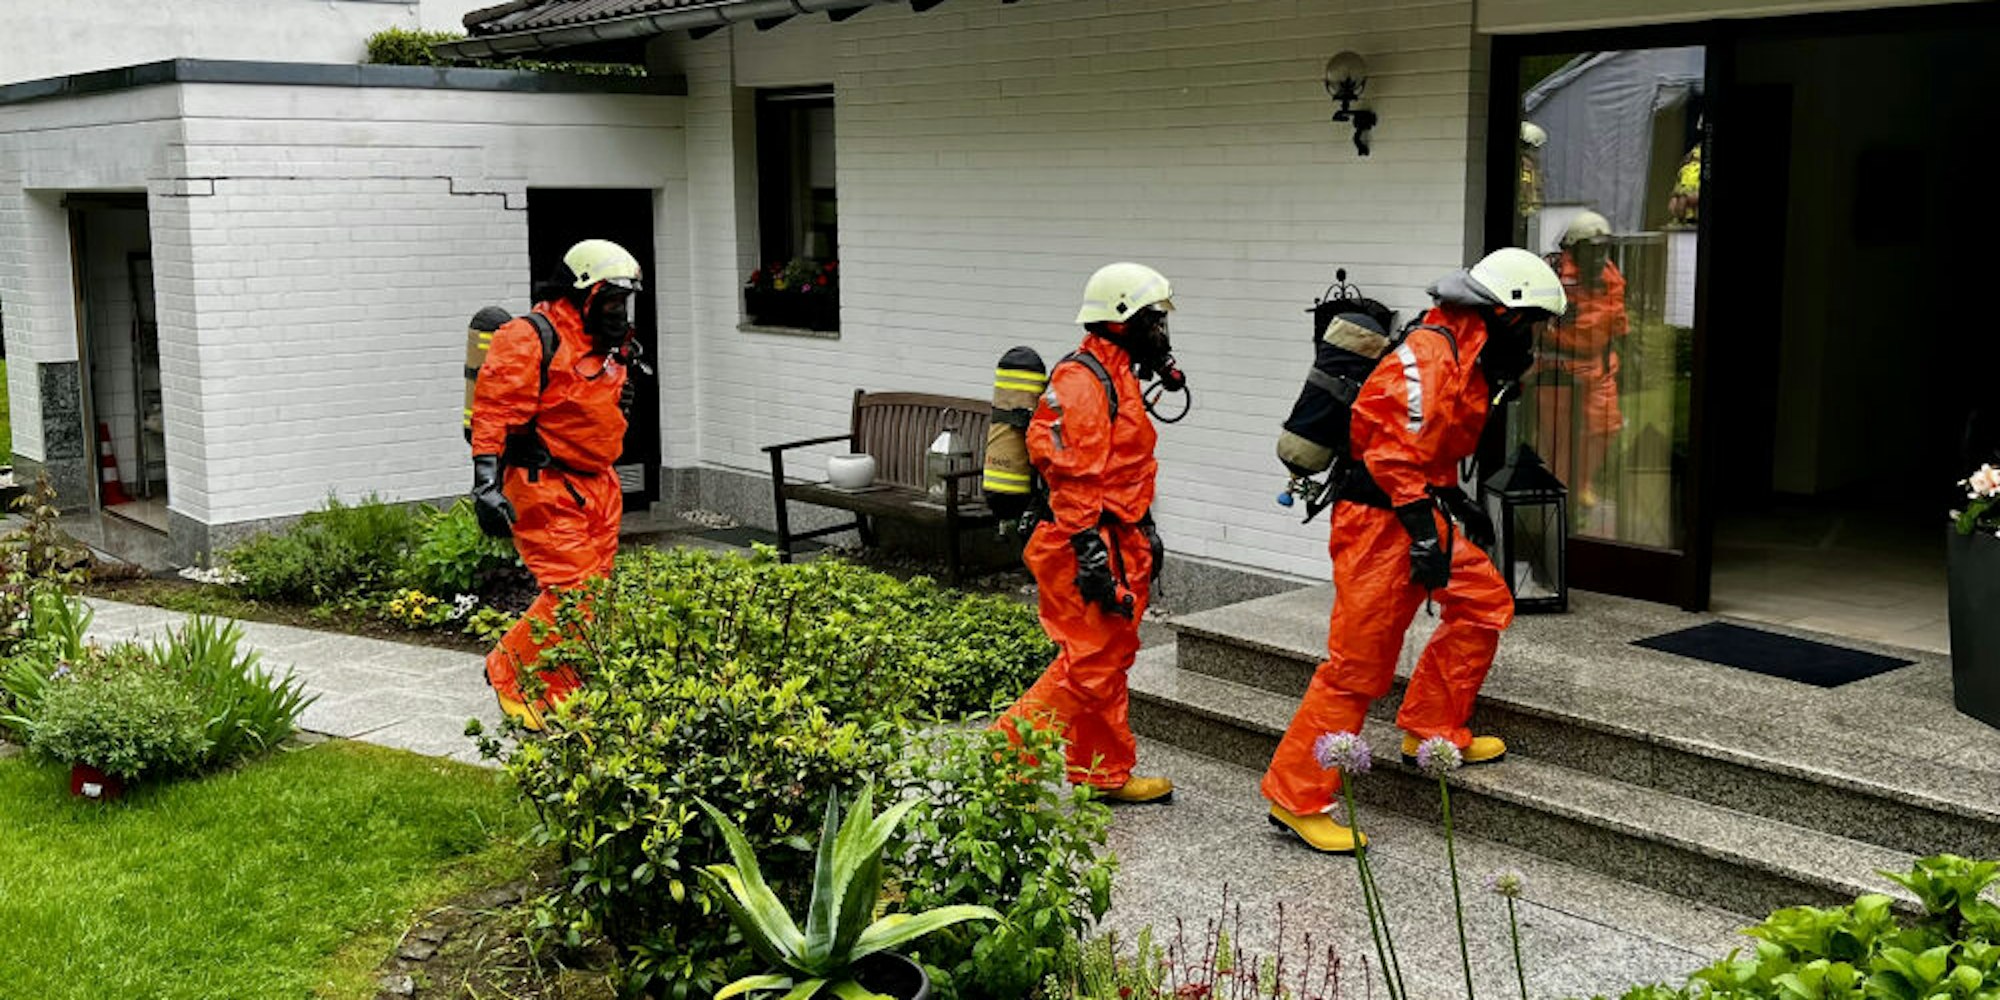 In speziellen Chemikalienschutzanzügen und unter Atemschutz arbeitete sich die Feuerwehr in den Keller des Hauses vor, in dem rund 200 Milliliter Chlorbleichlauge ausgelaufen waren.